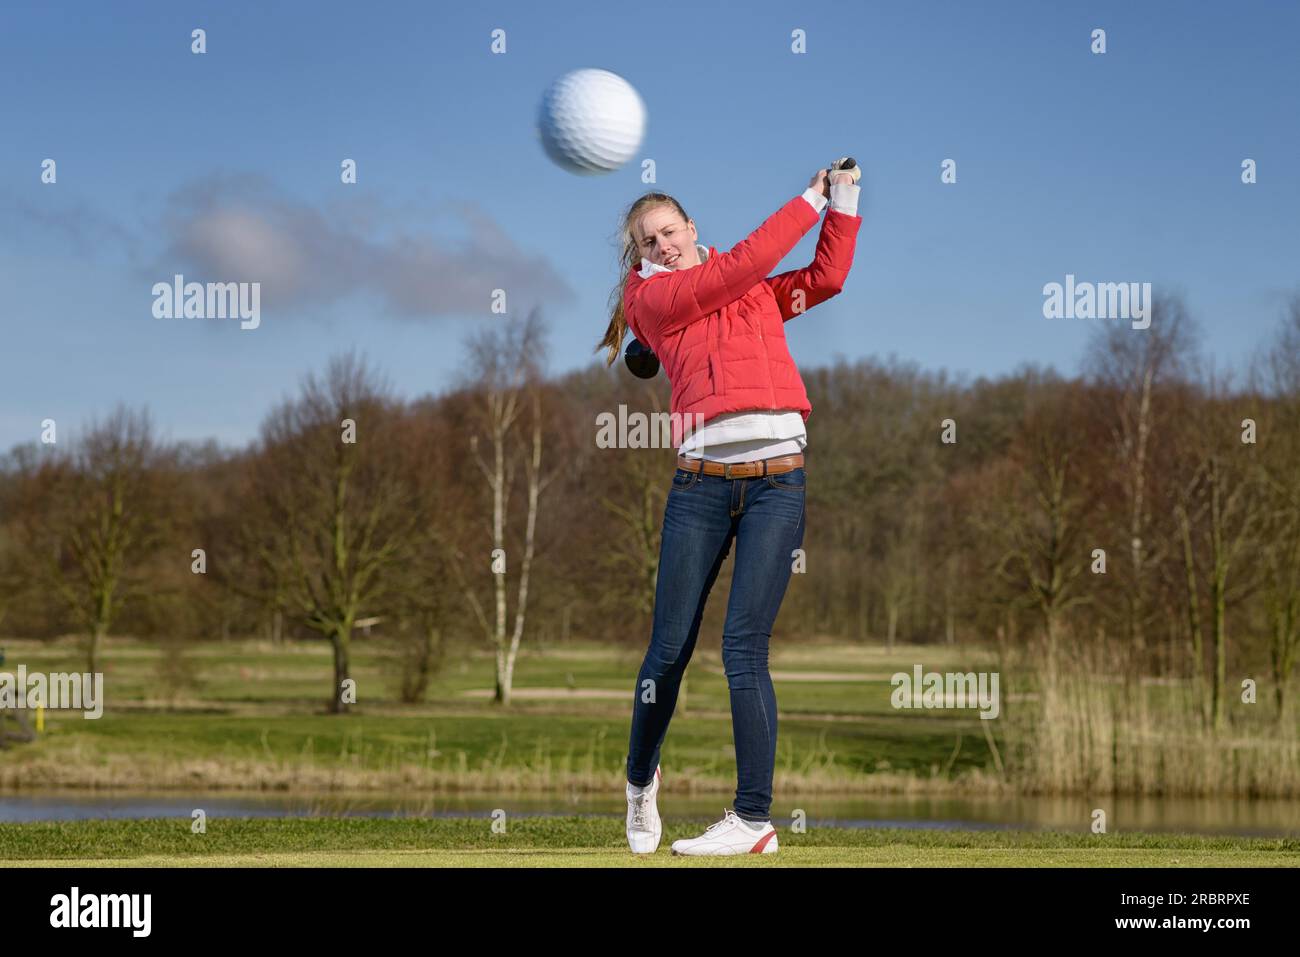 Donna golfista che colpisce la palla da golf con un autista di fronte a un pericolo d'acqua su un campo da golf con la palla che vola in aria verso la telecamera Foto Stock